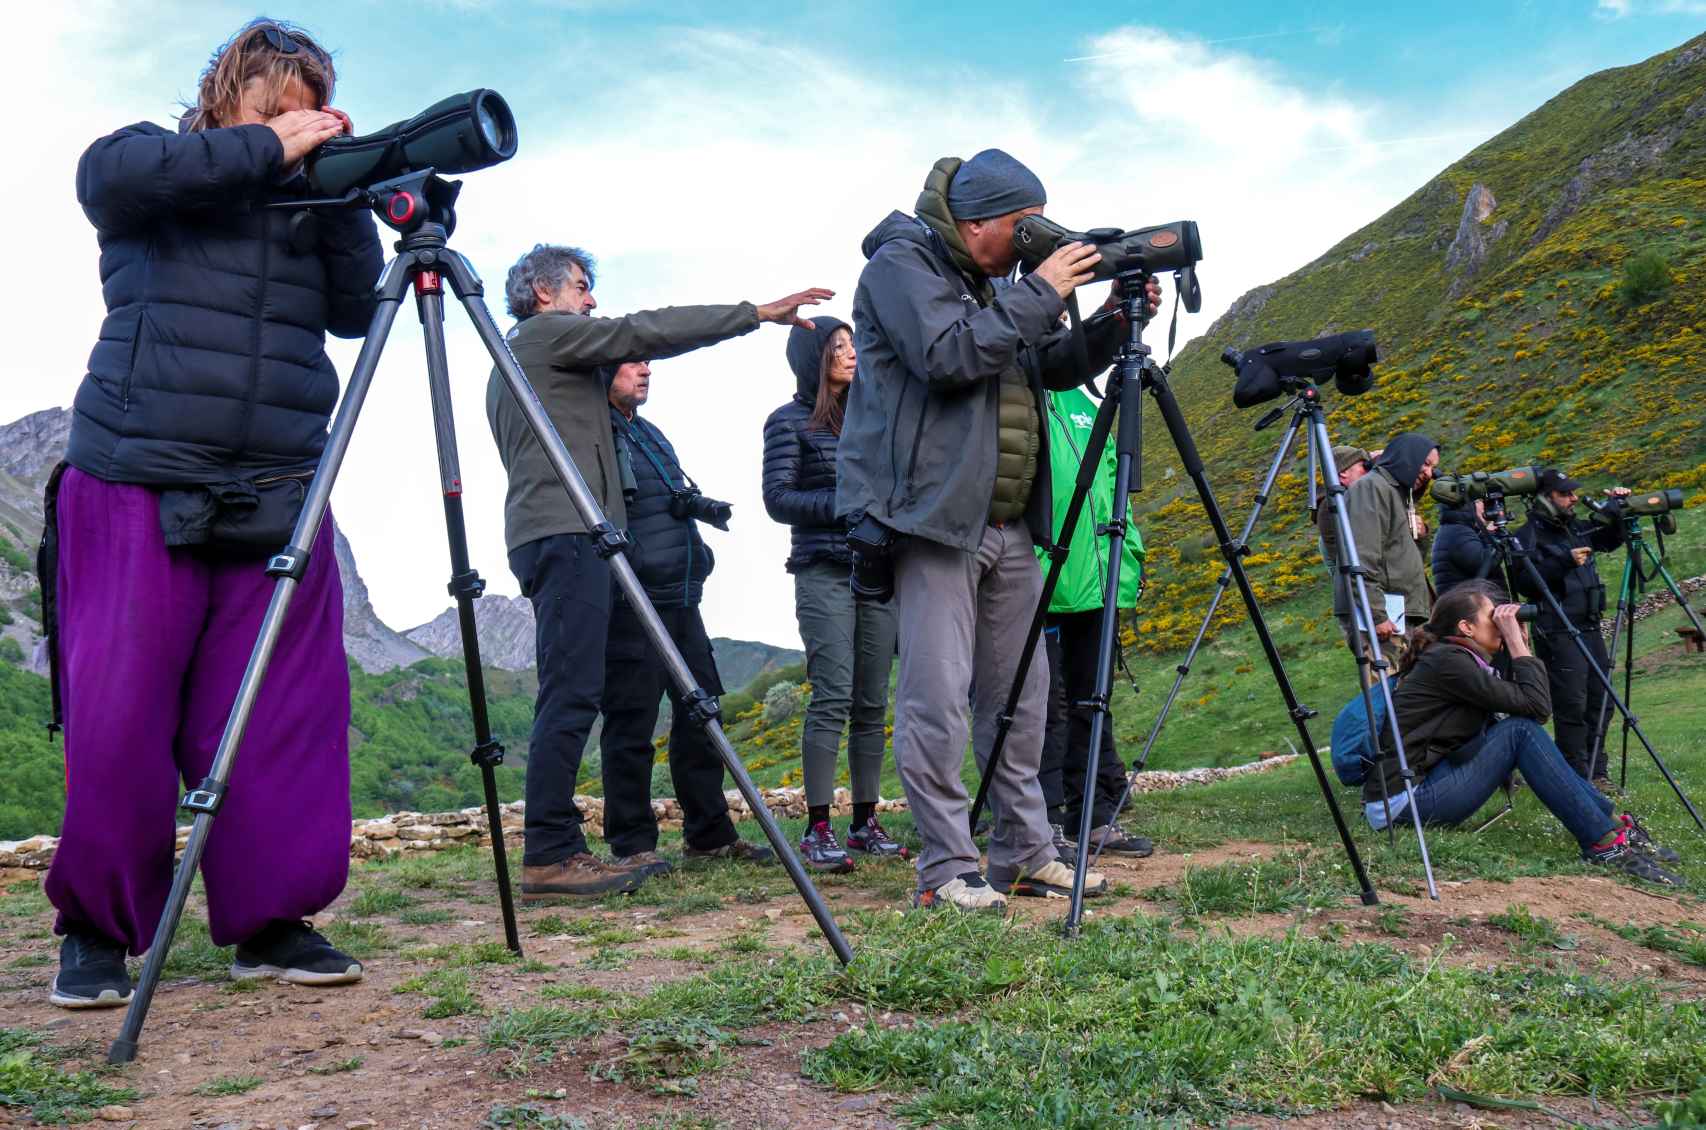 Periodistas de medios nacionales e internacionales participan en las sesiones de avistamiento de osos pardos en libertad